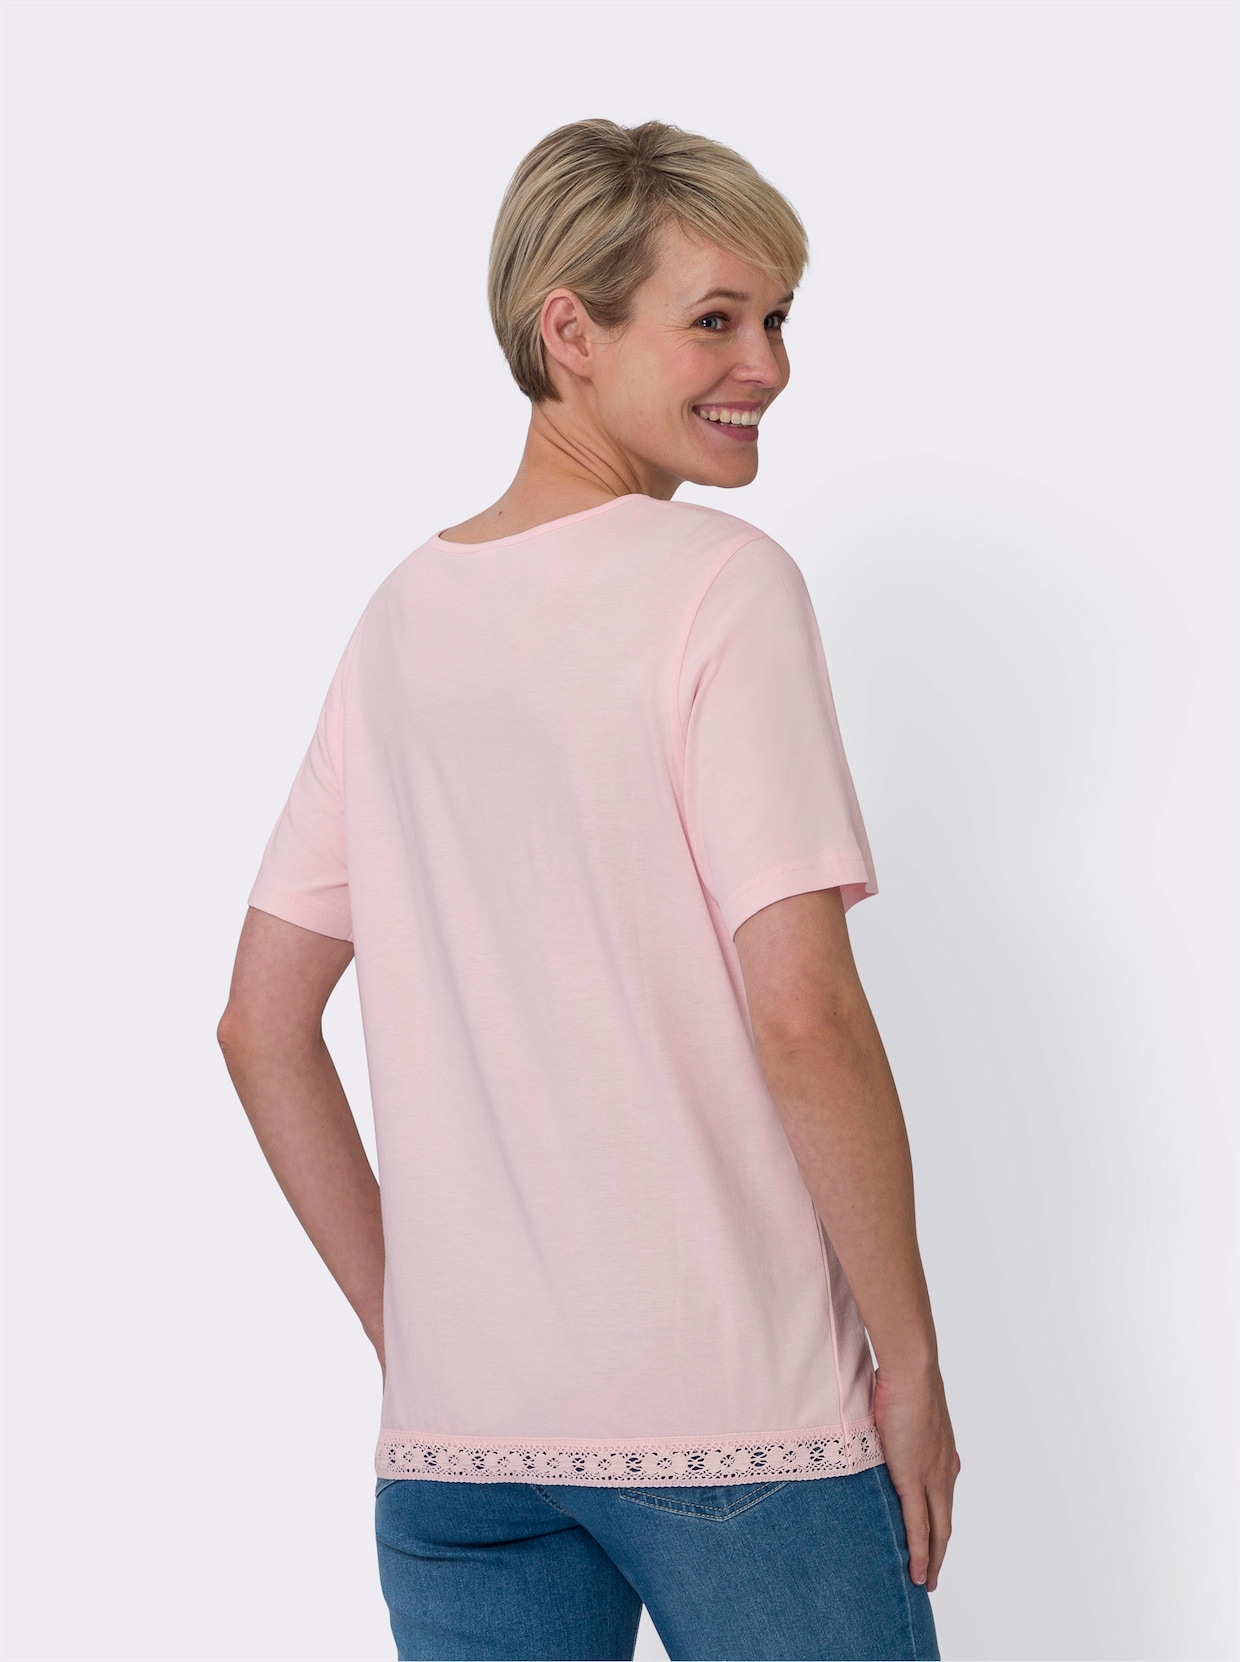 Tričko s krátkým rukávem - světle růžová